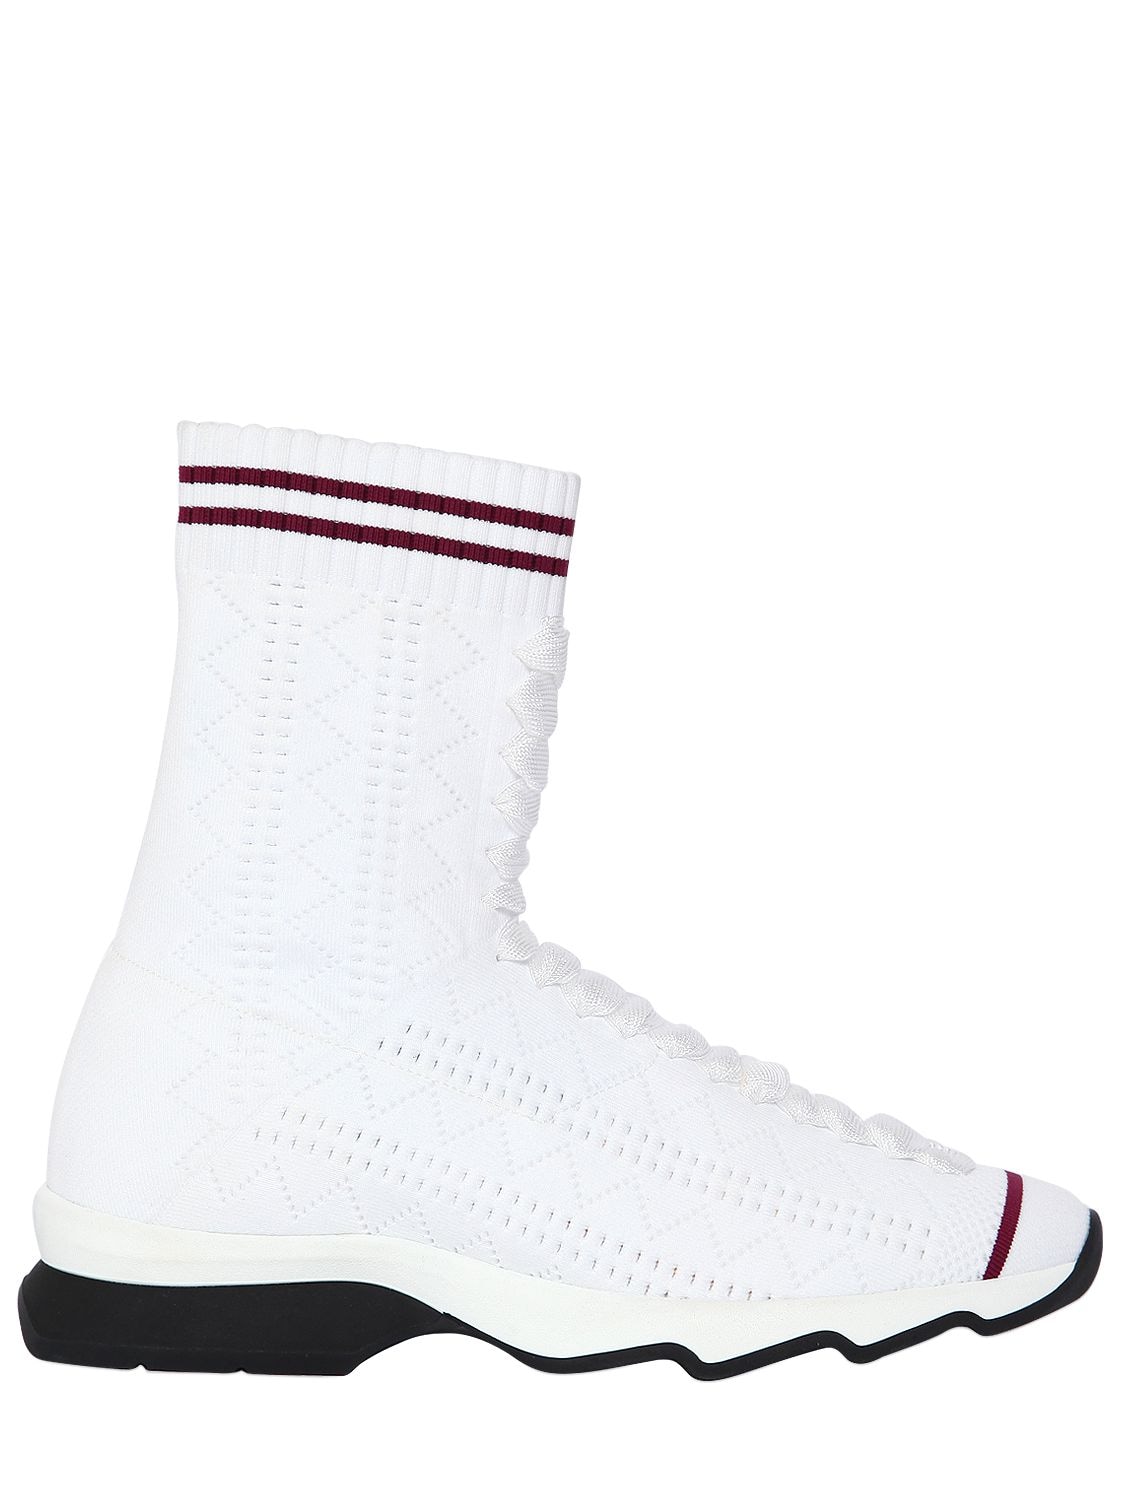 Fendi 30mm Stretch Knit Sneakers In White/bordeaux